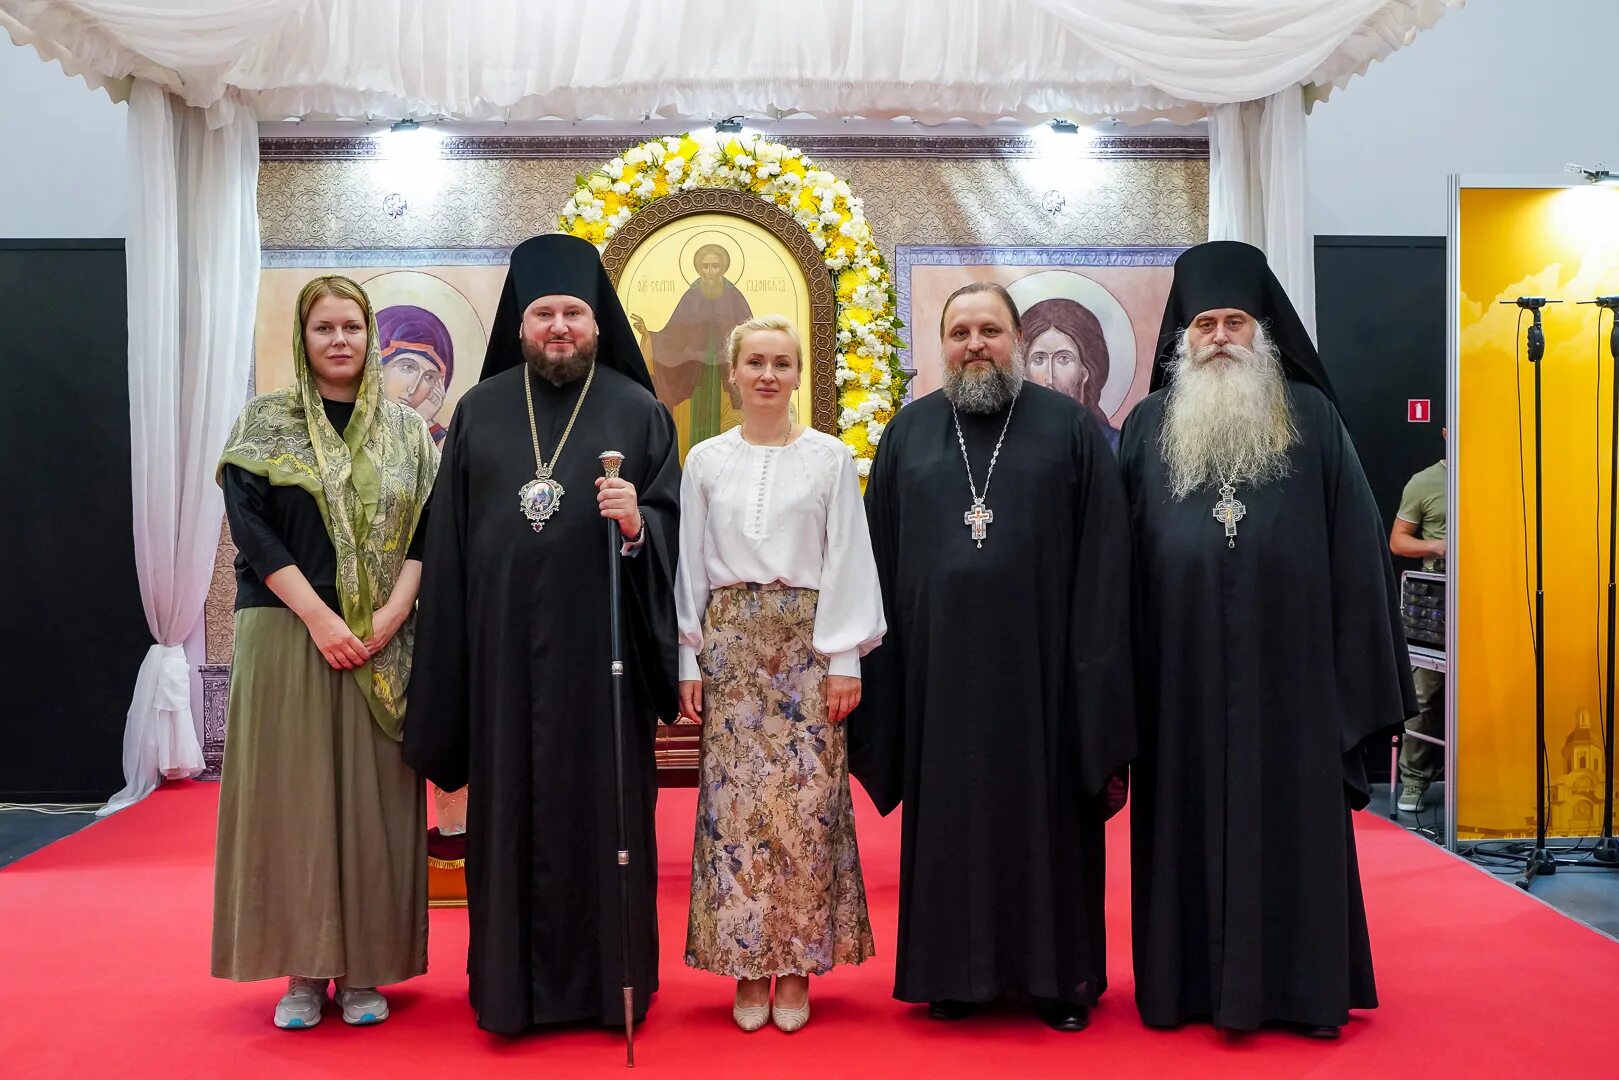 Где проходит ярмарка православная в нижнем новгороде. Православная ярмарка в Нижнем Новгороде в 2022 году. Православная ярмарка в Нижнем. Православная ярмарка в Нижнем Новгороде.